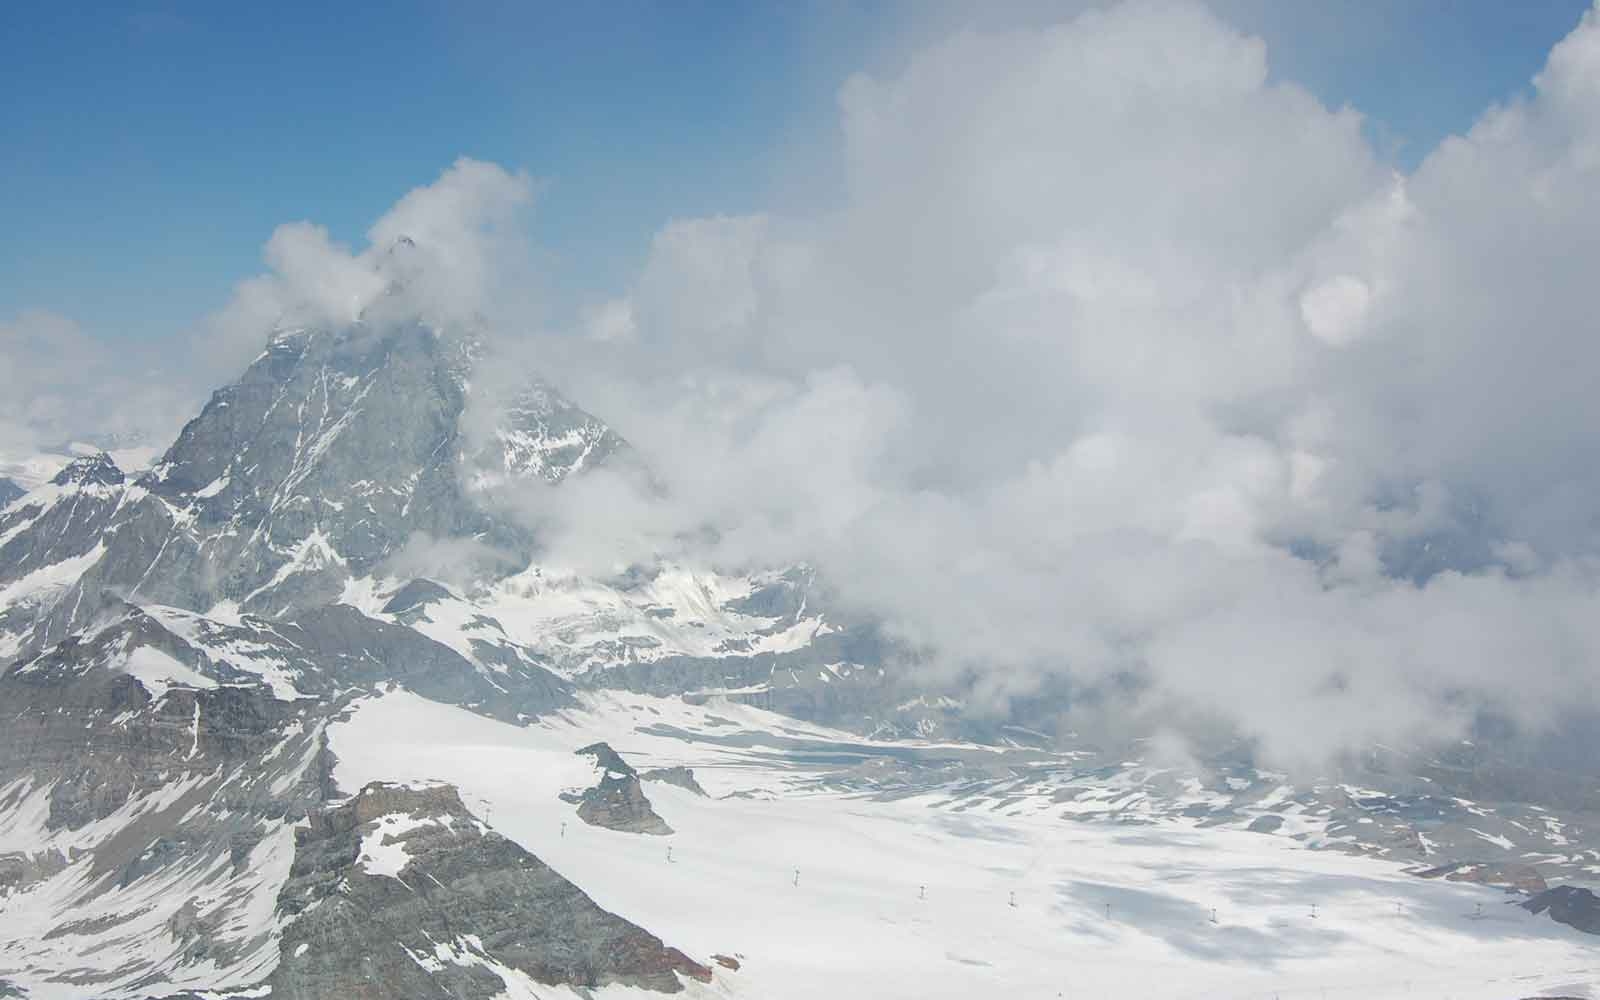 Standing on the Klein Matterhorn aka "Little Matterhorn", Switzerland